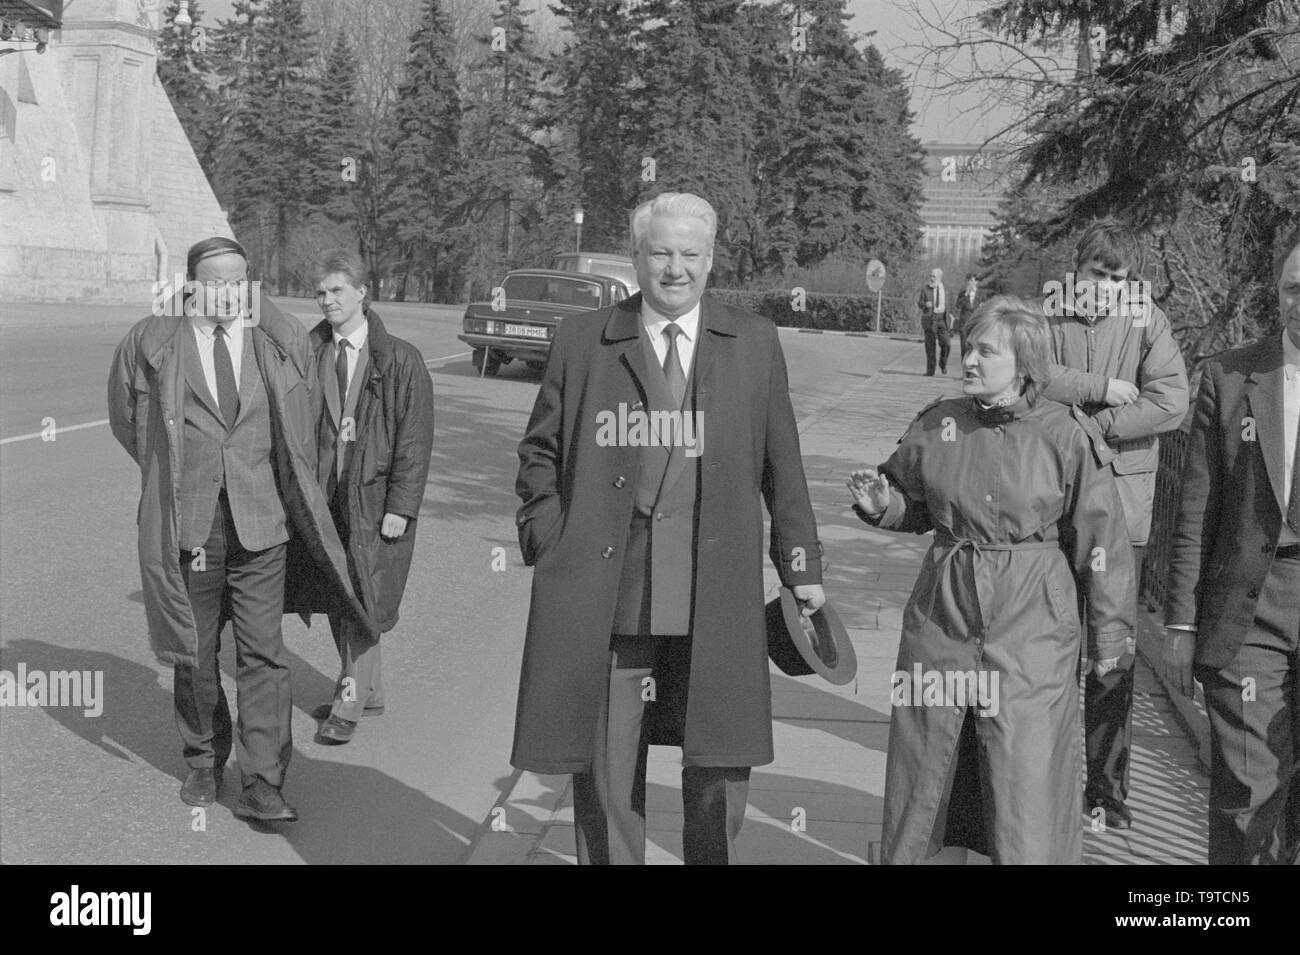 Moscou, URSS - 28 mars 1991 : Le Président du Présidium du Soviet suprême de la RSFSR Boris Nikolaïevitch Eltsine promenades à l'extérieur dans Kremlin avec ses gardes du corps et associés. Banque D'Images